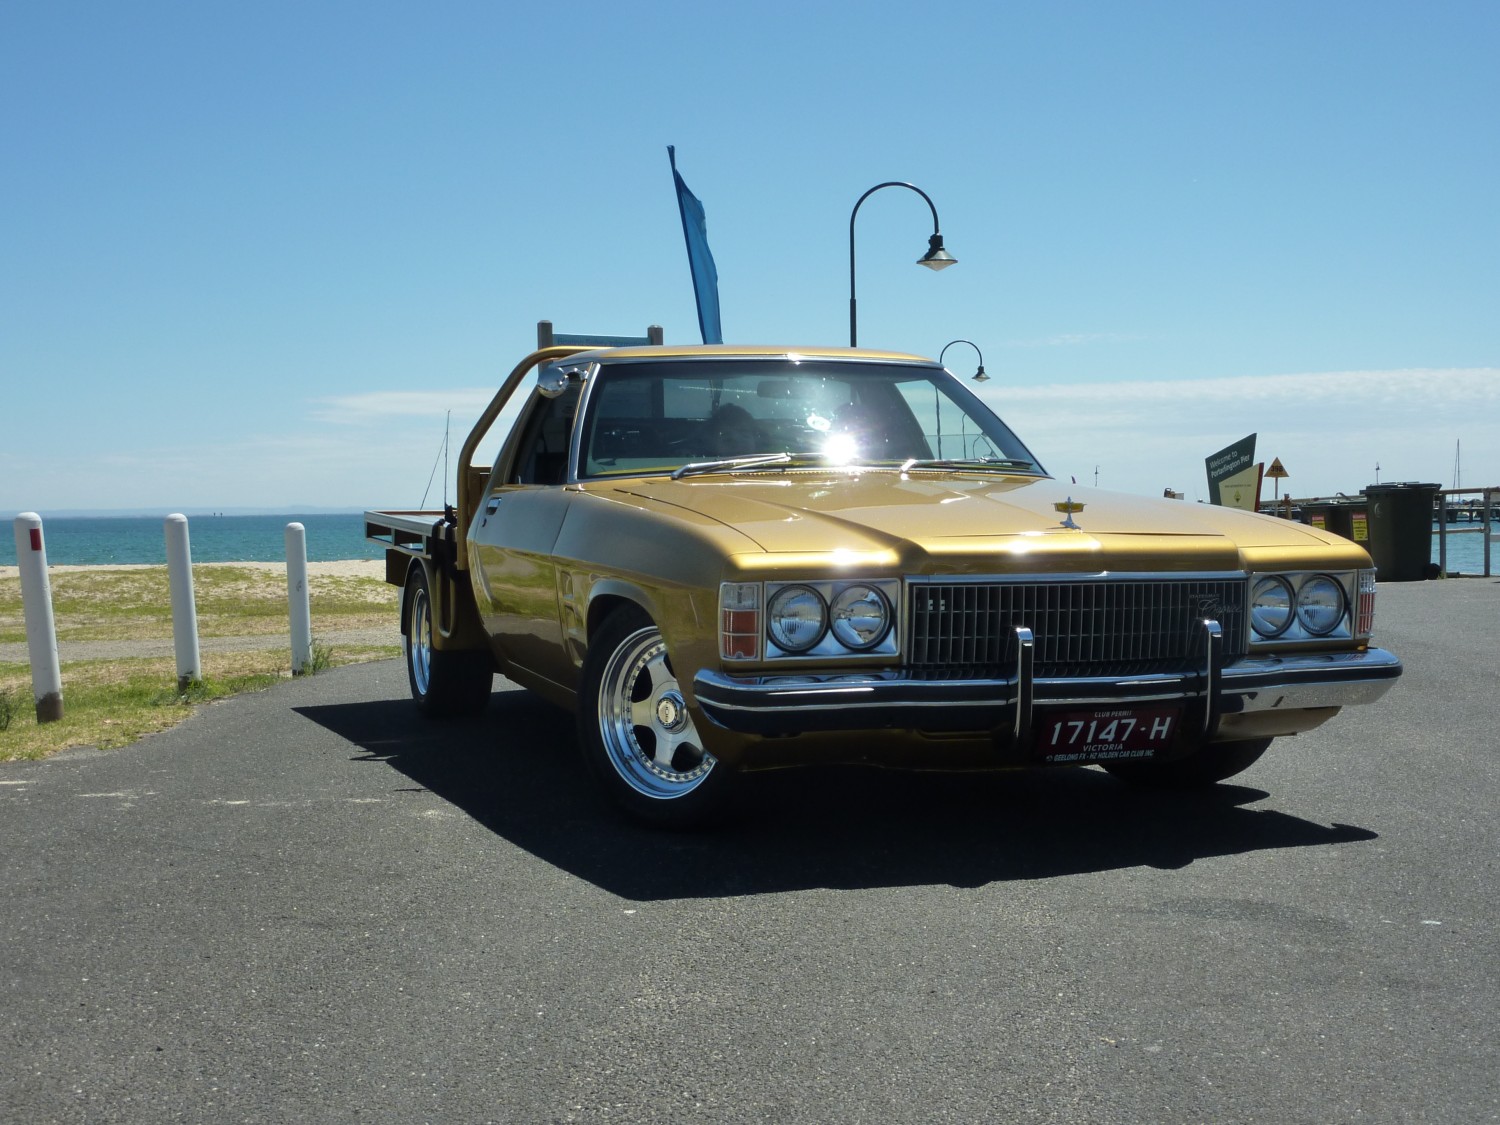 1975 Holden HJ